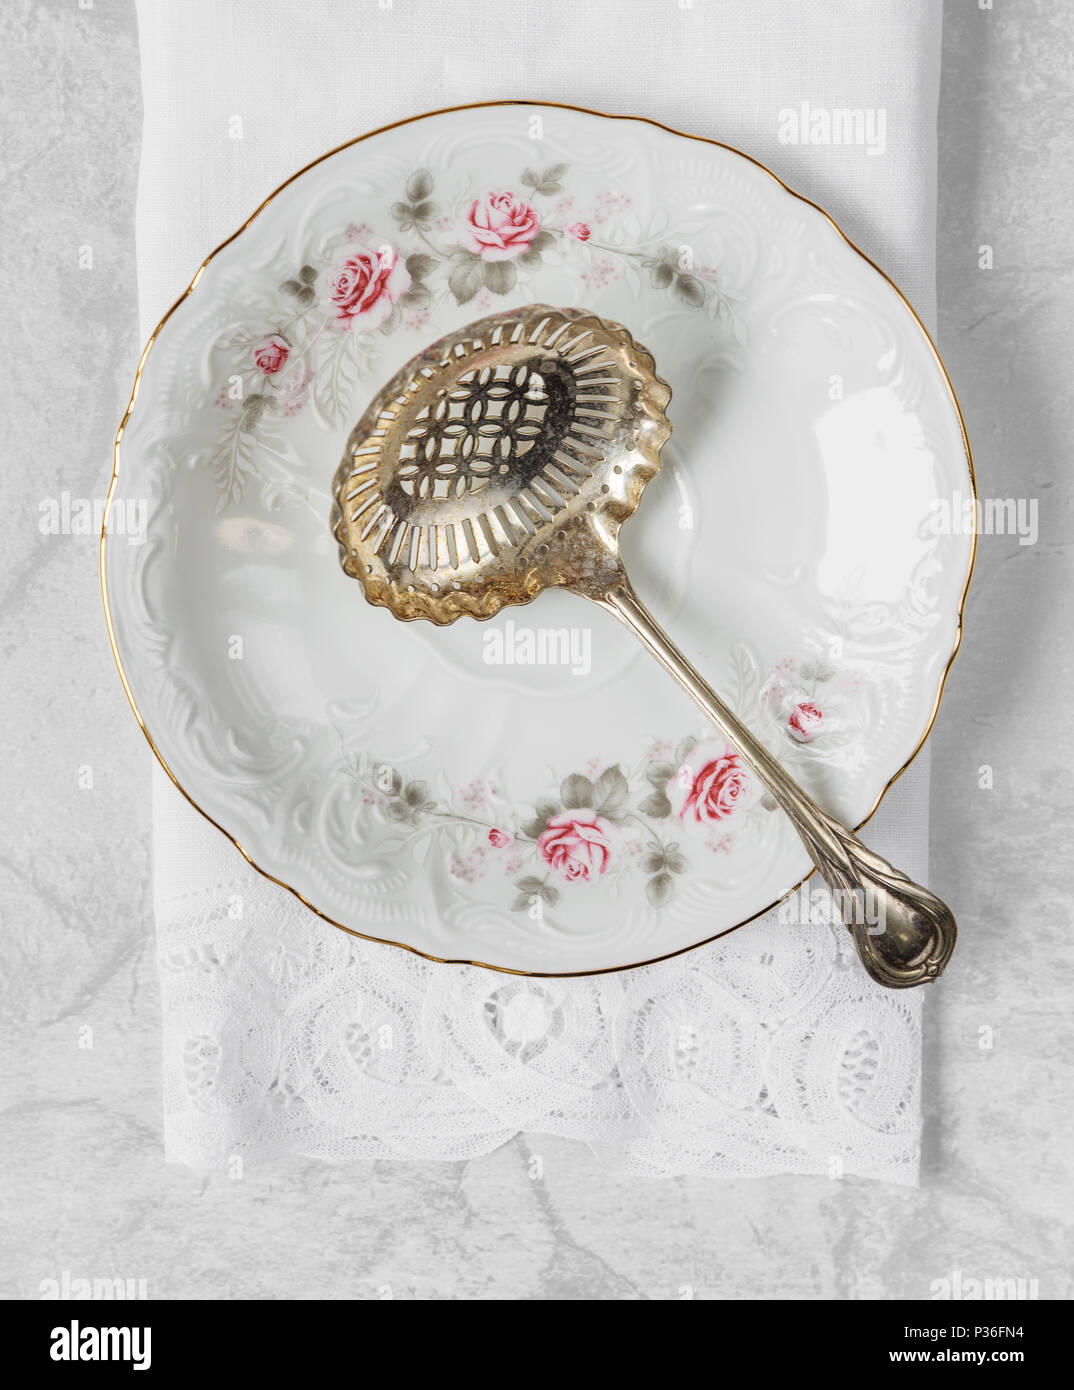 Schönen silbernen Löffel für Kompott liegt auf einem Porzellanteller mit Goldrand, mit einem Muster von Rosen dekoriert, mit einem lacy Bettwäsche Serviette. Ansicht von oben Stockfoto